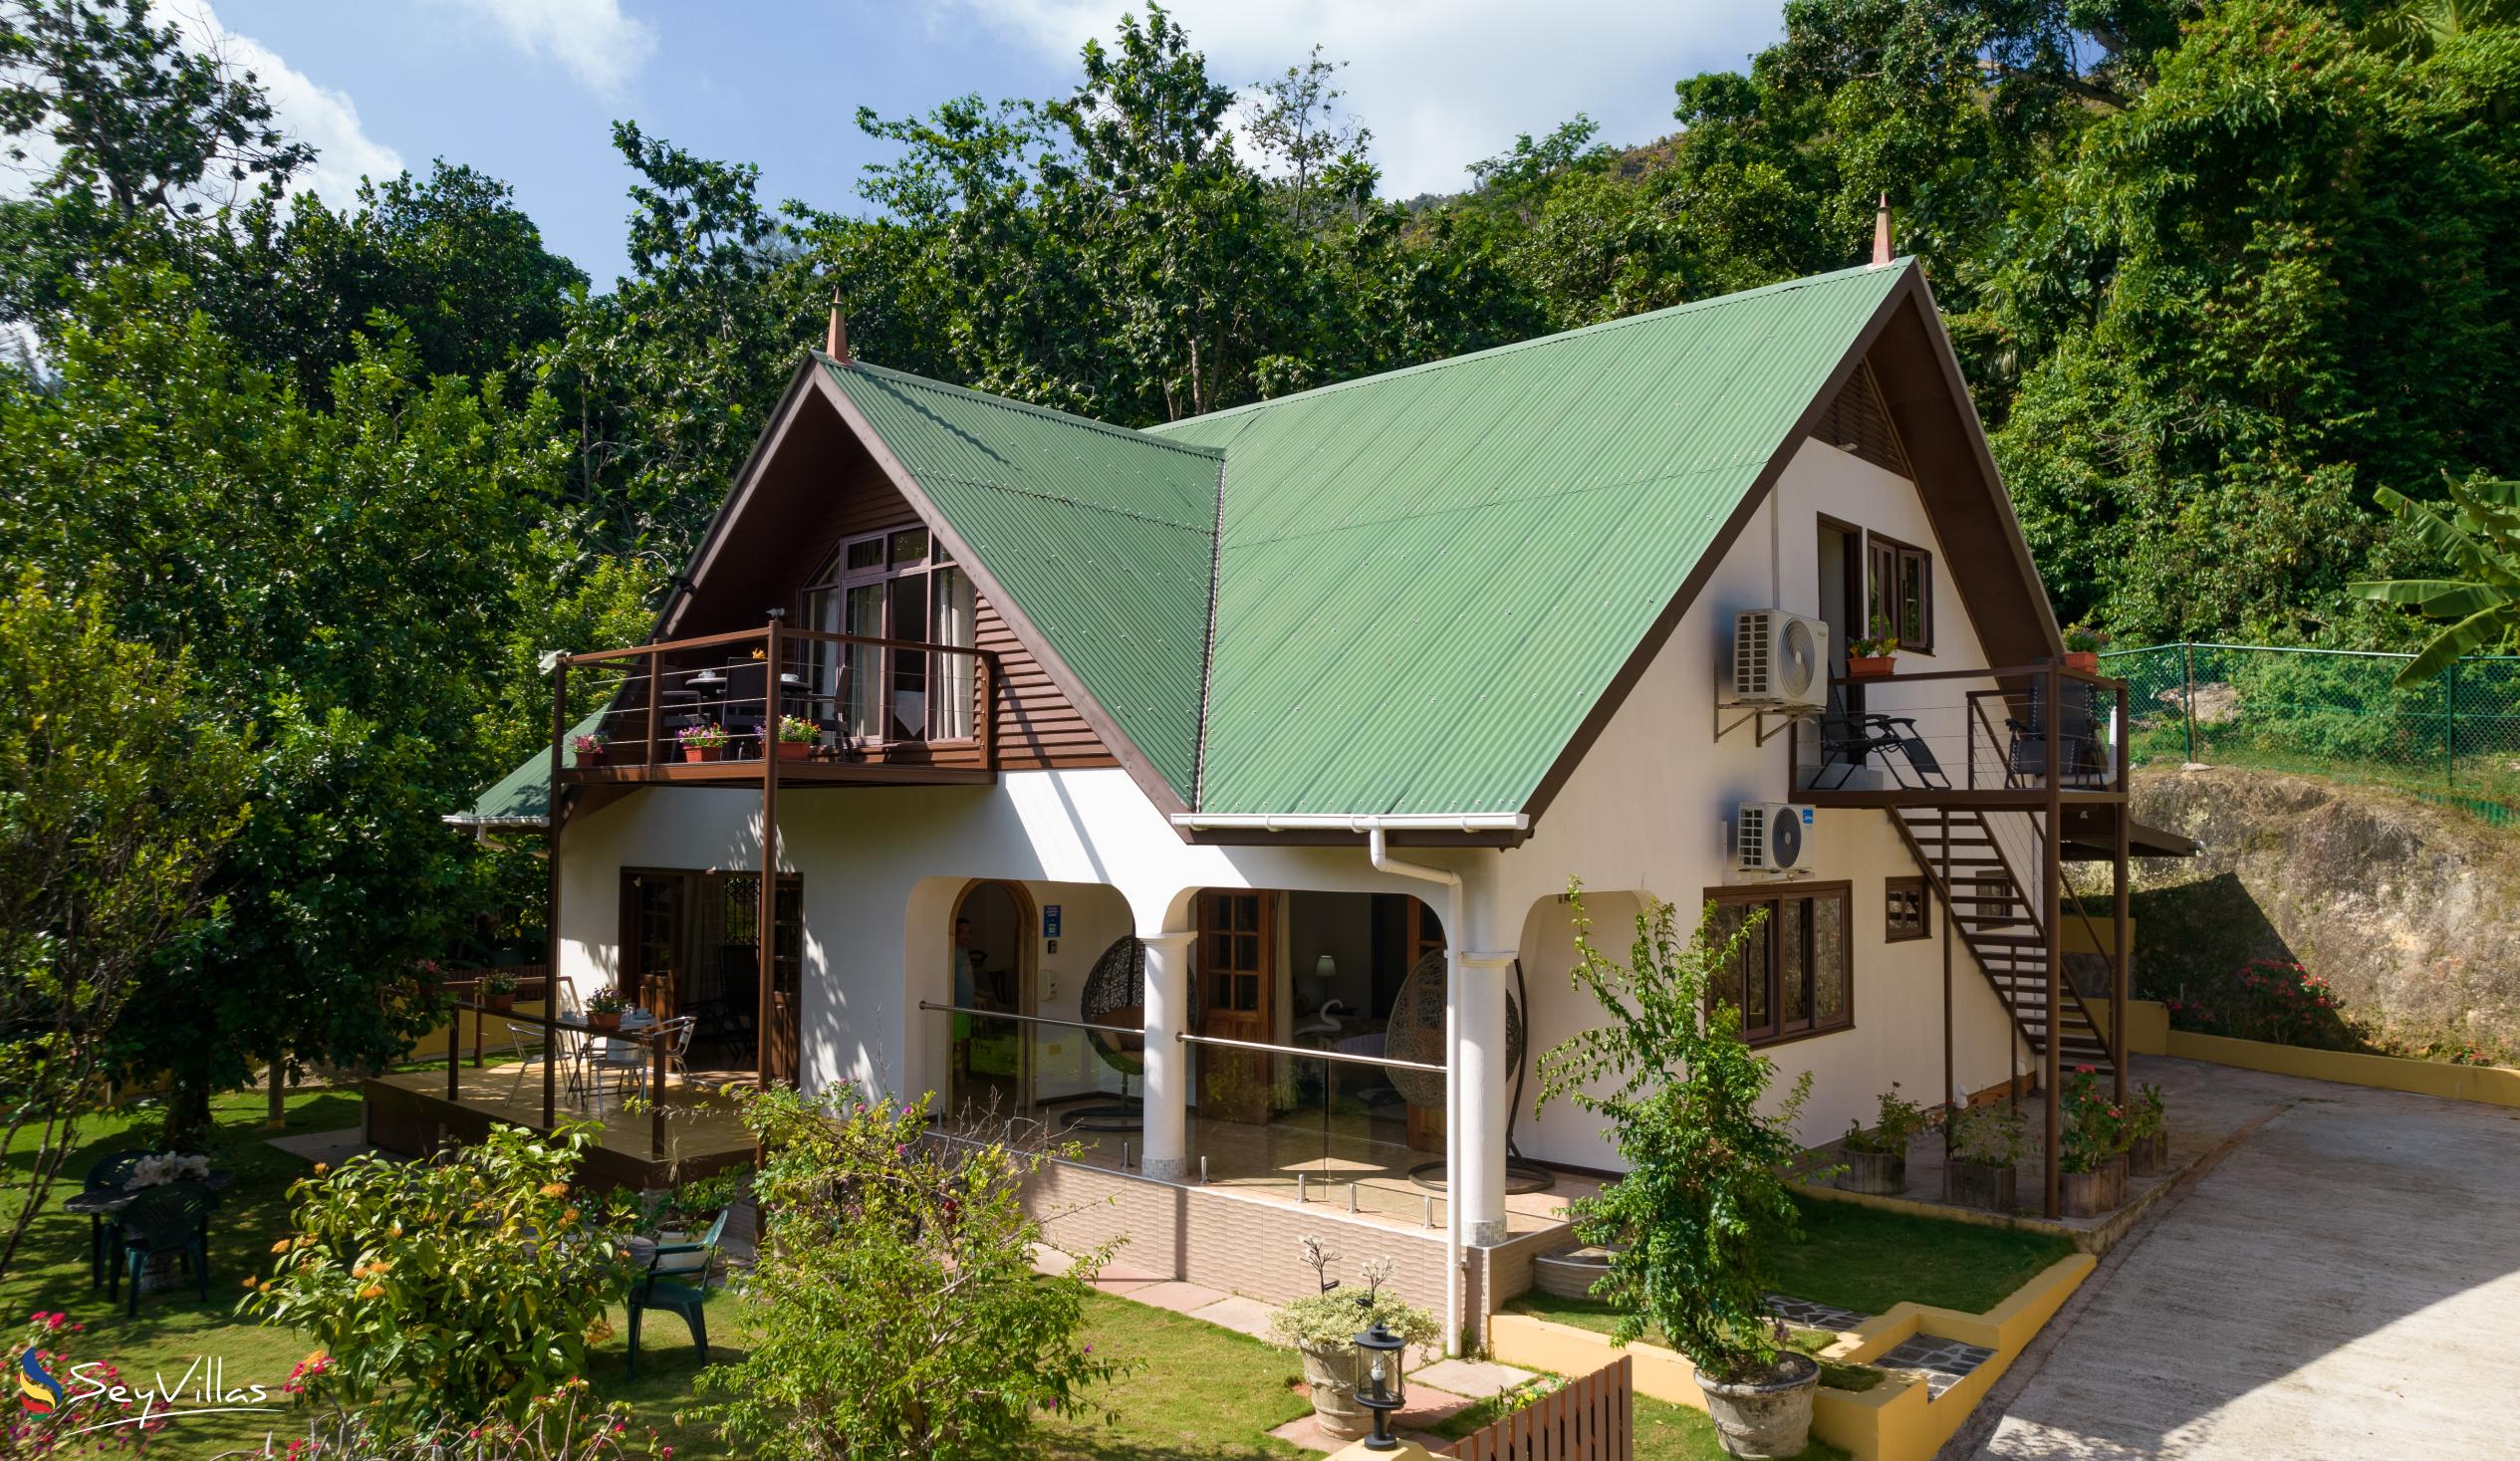 Photo 12: La Casa Grande - Outdoor area - Praslin (Seychelles)